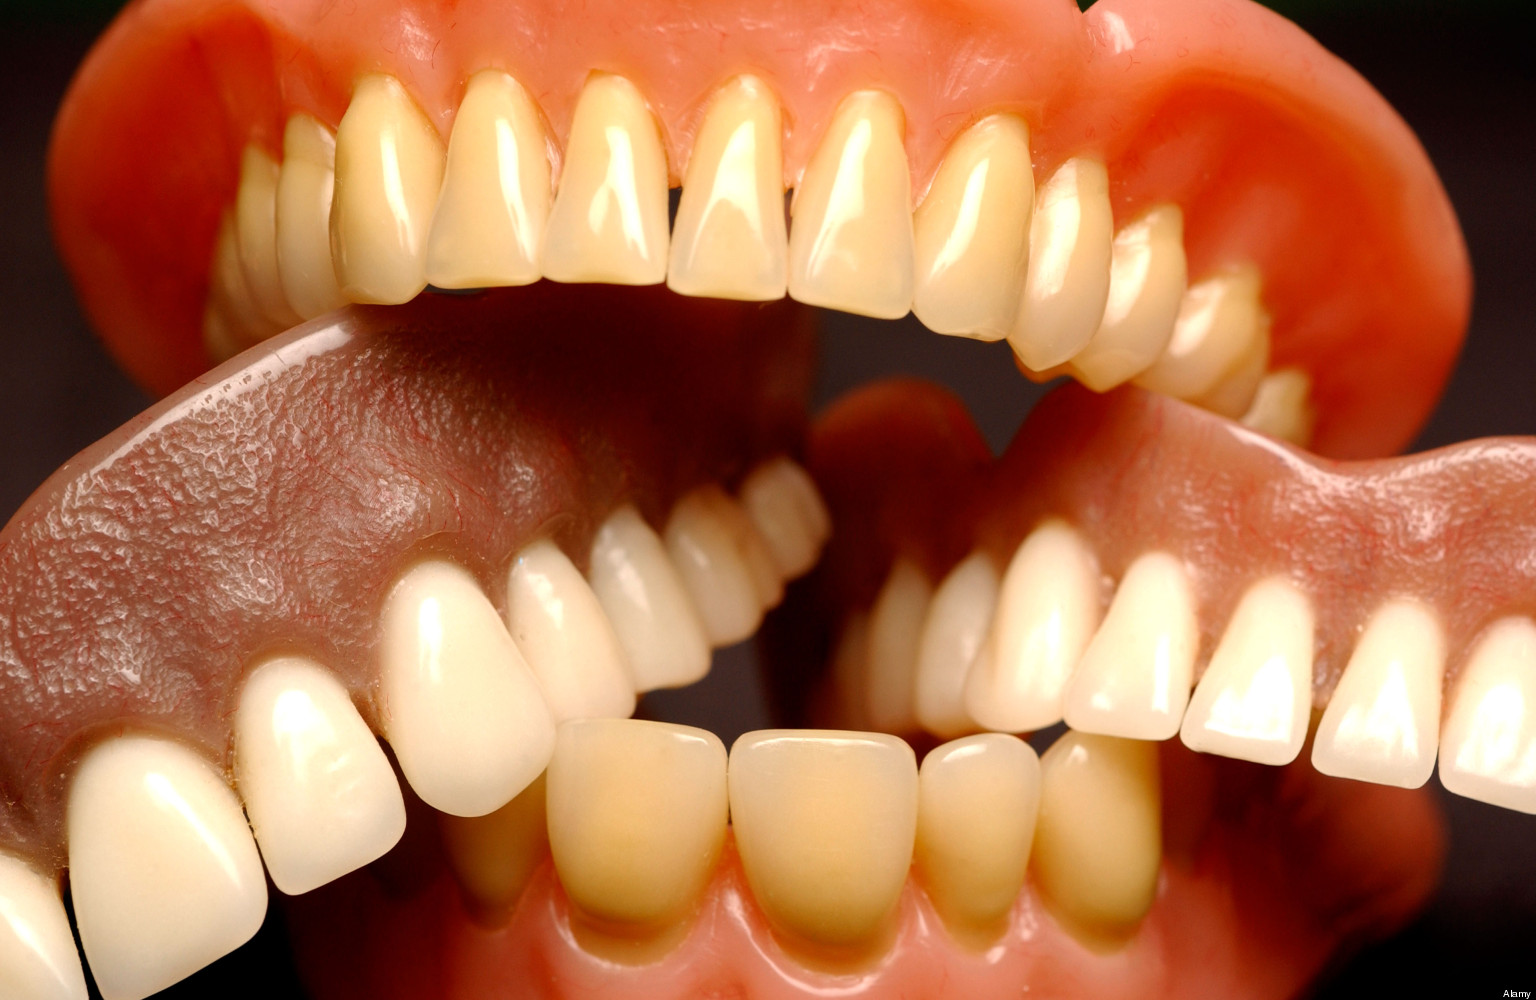 وقتی دندان‌ها از دهان بیرون می‌پرند!/ مشکلات پروتزهای دندانی سالمندان در گفتگو با دکتر شیرین معمارزاده